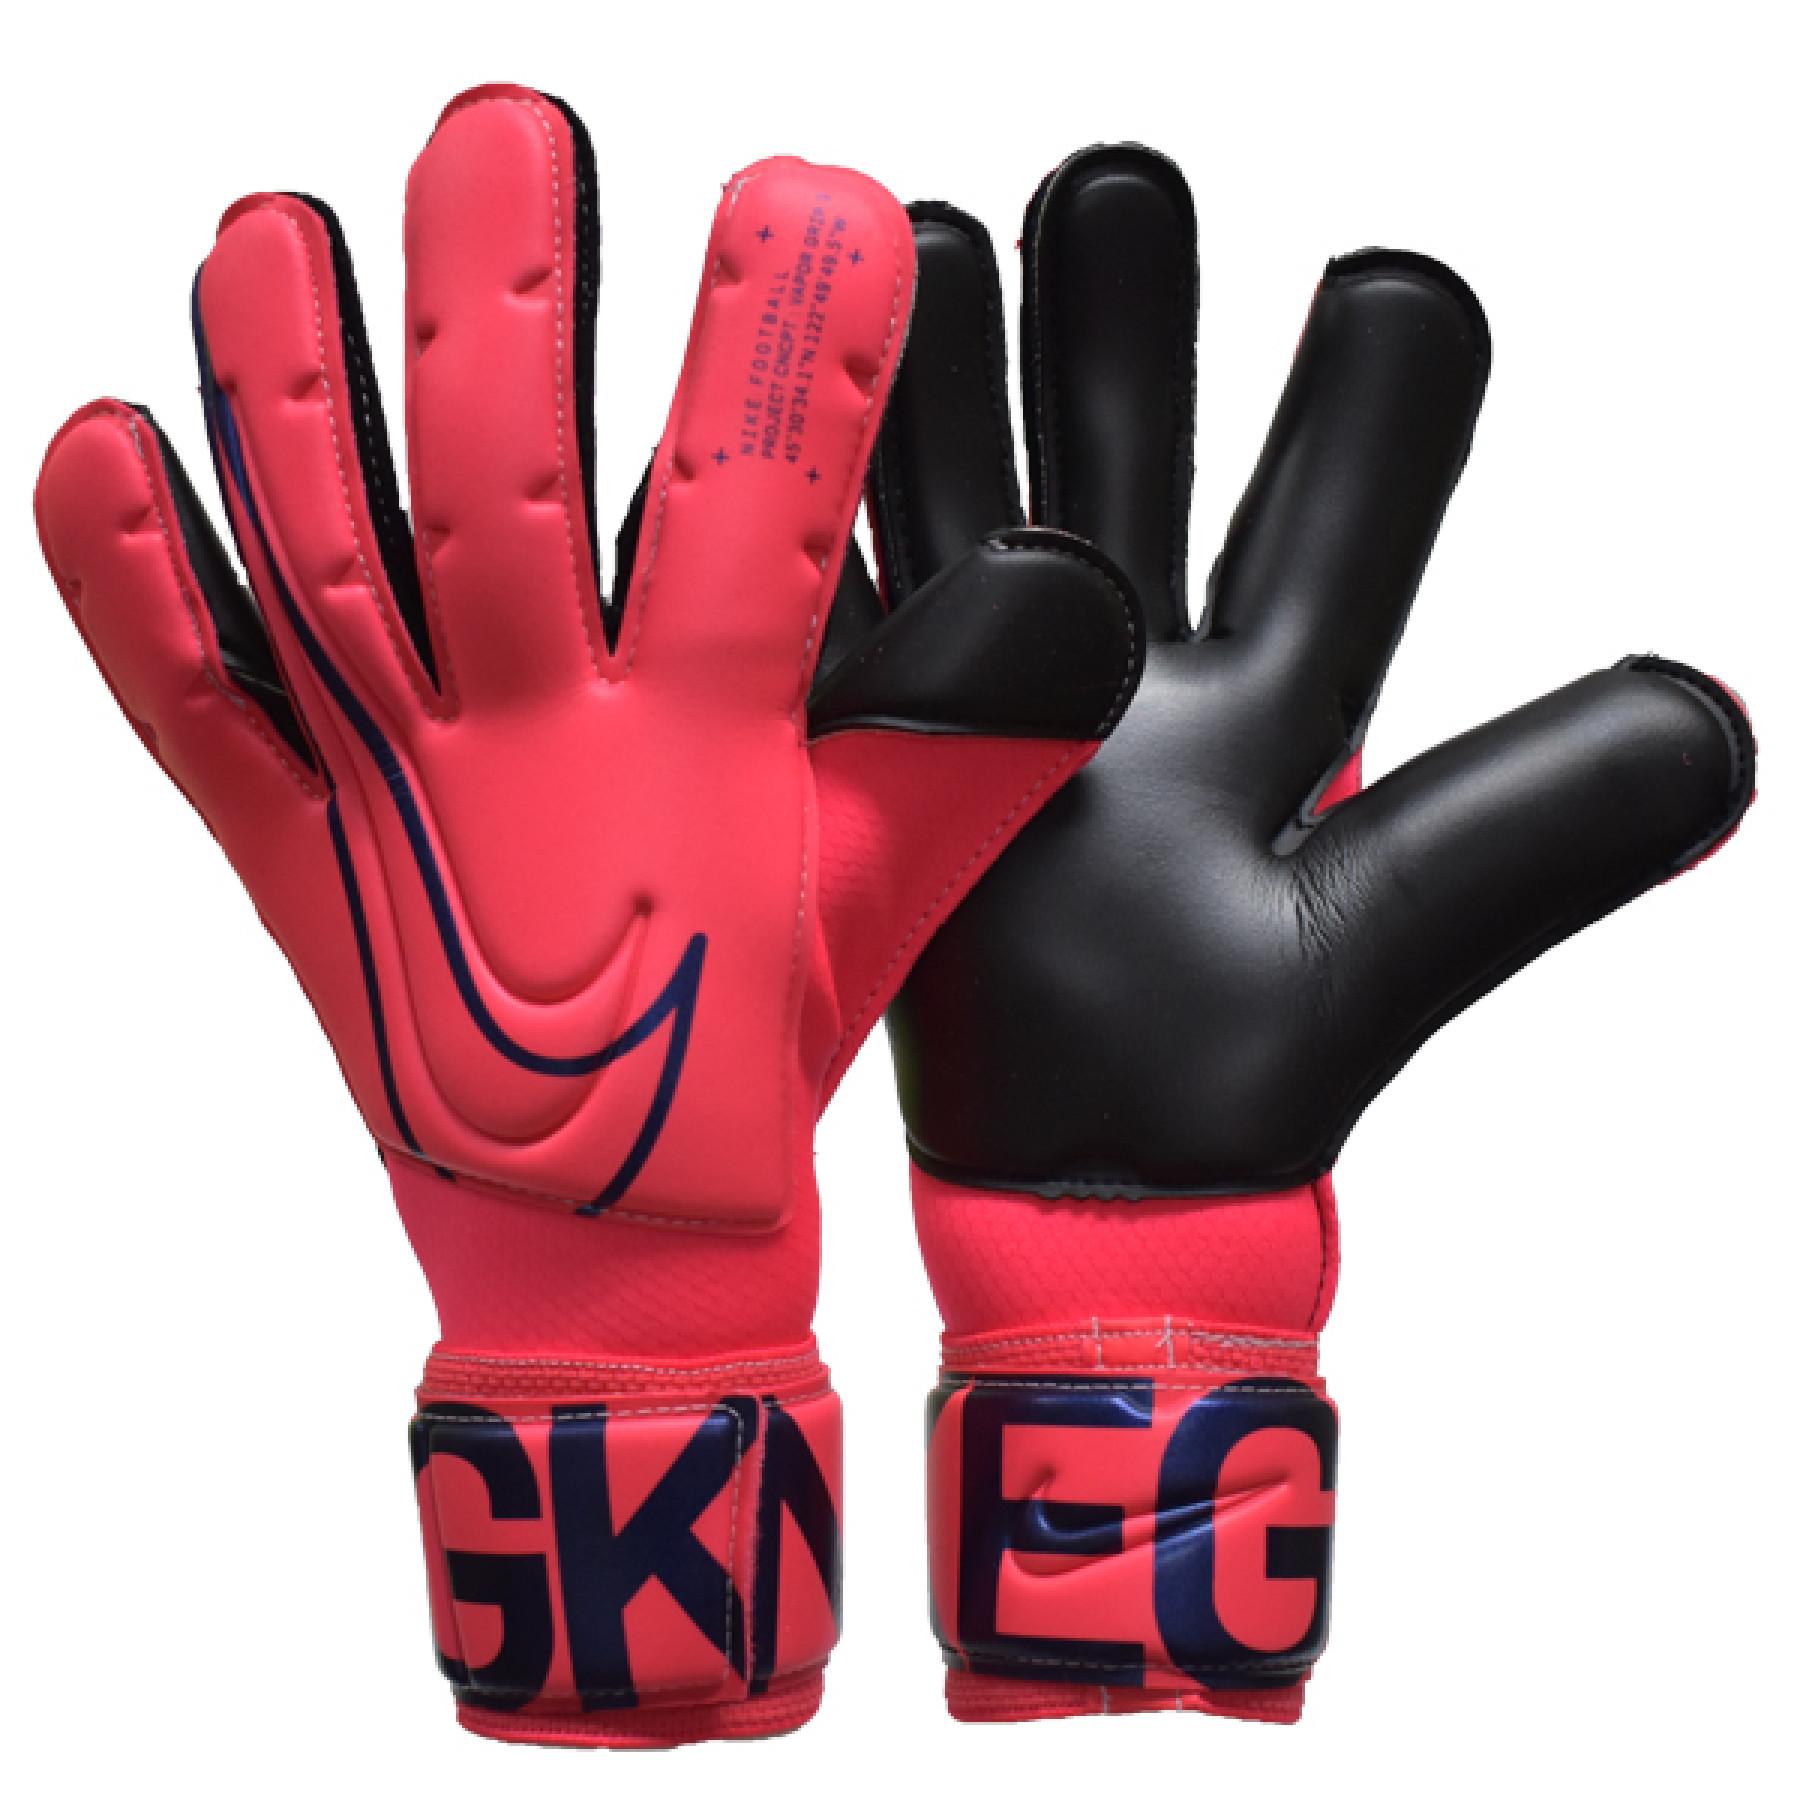 Goalkeeper gloves Nike Vapor Grip 3